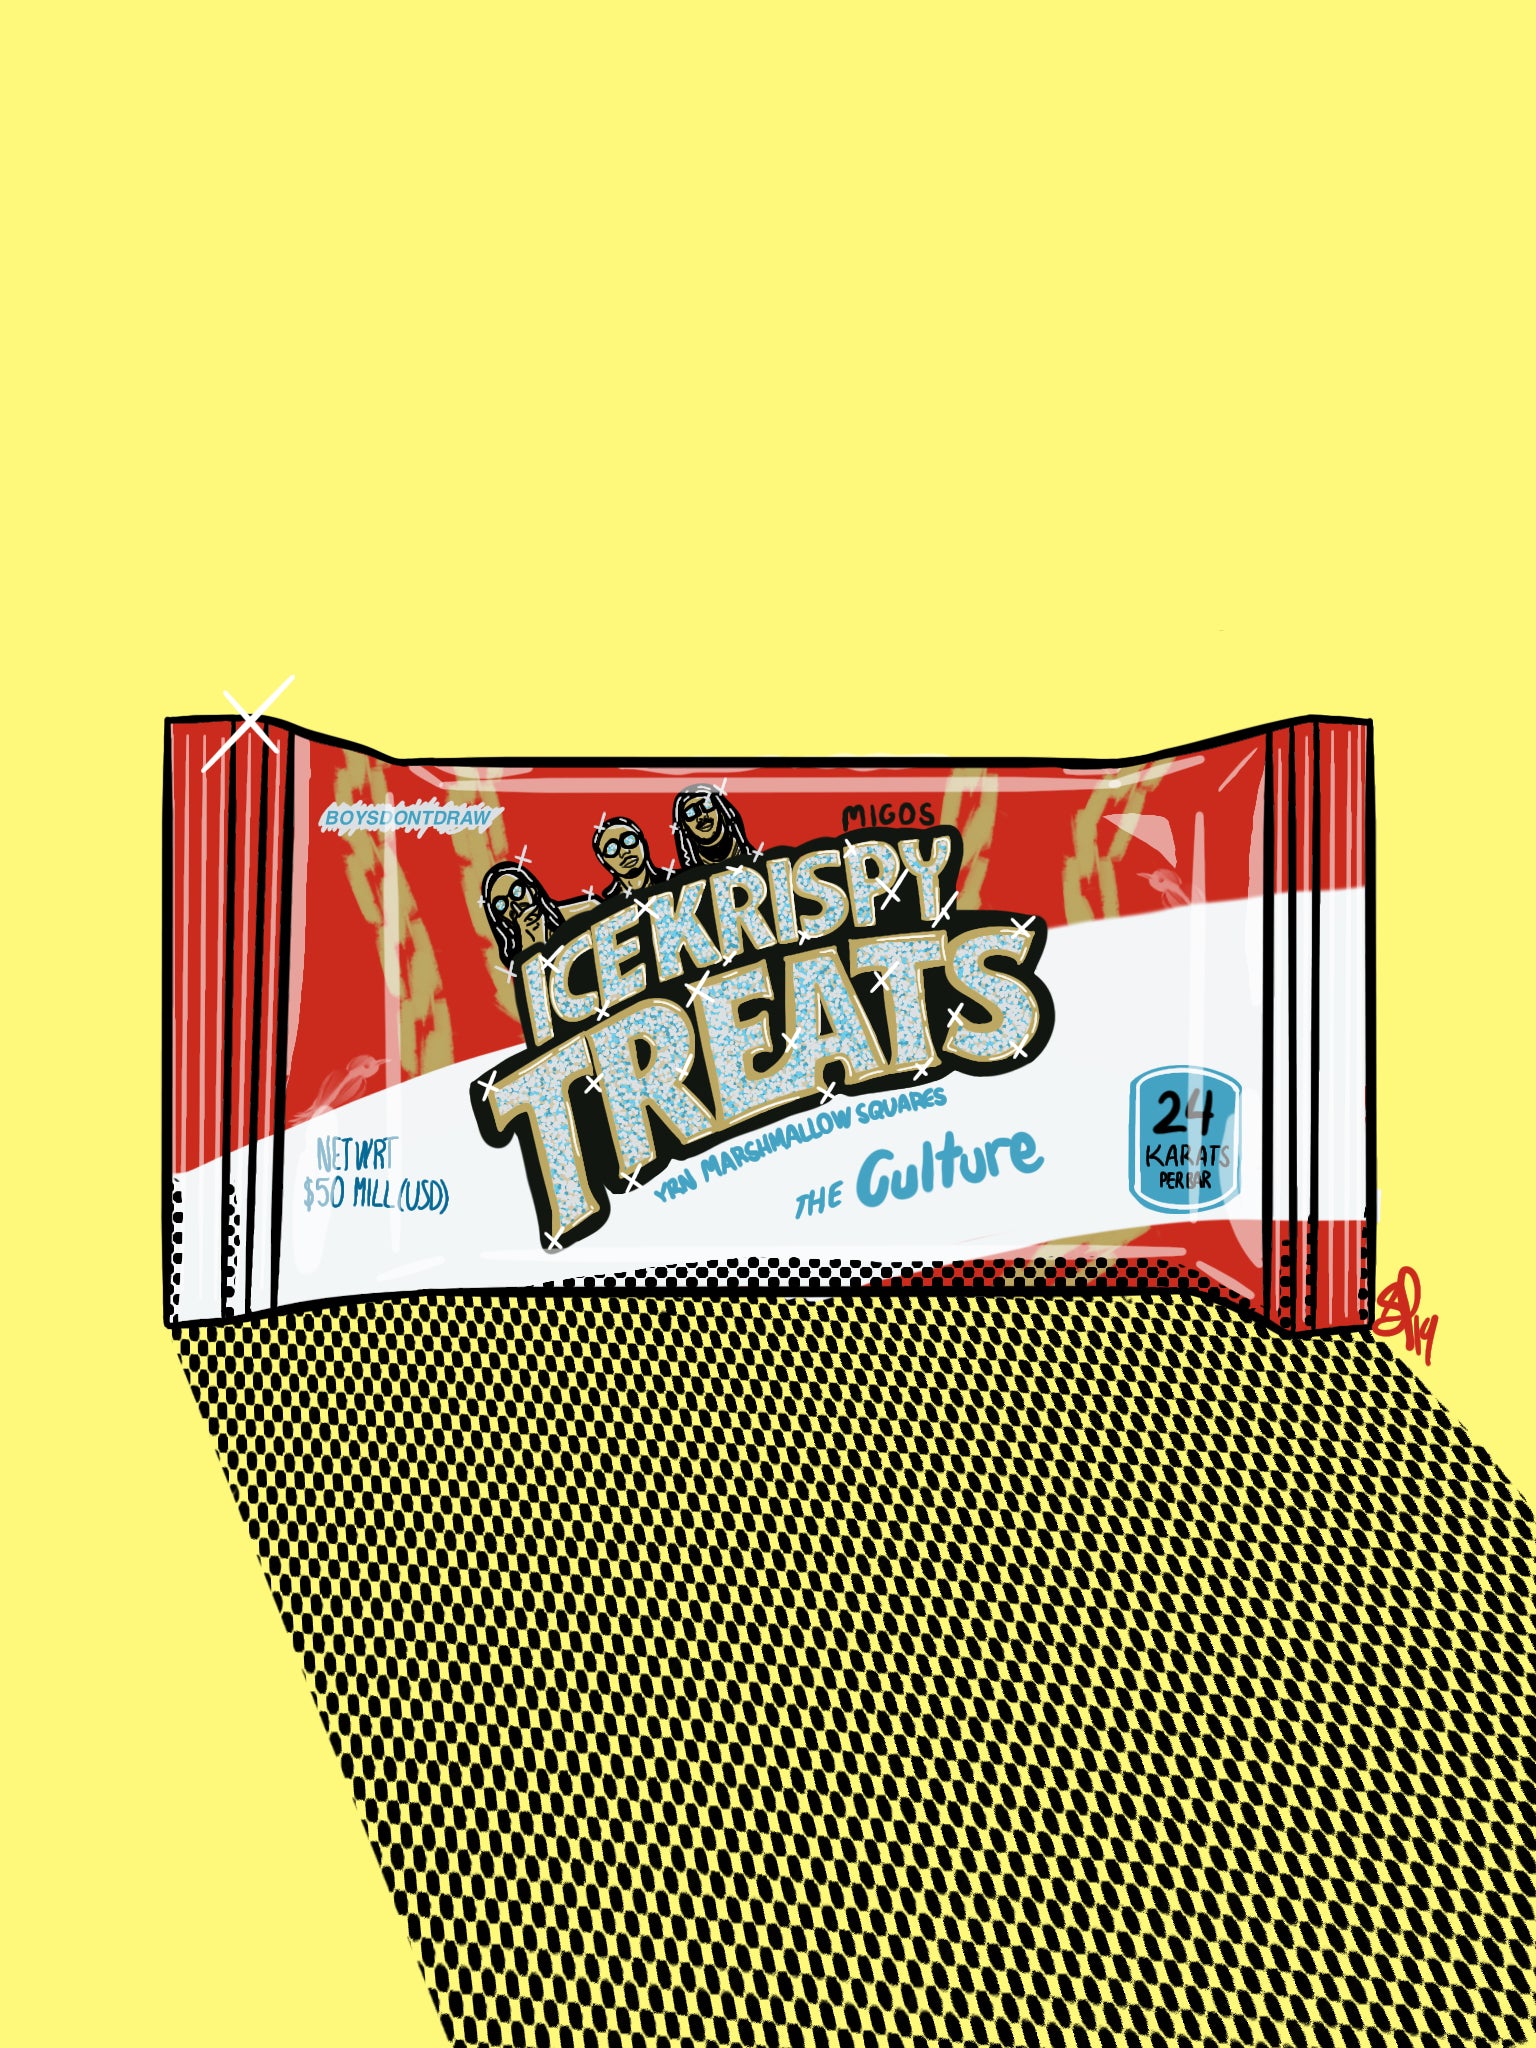 MIGOS ICE KRISPY TREAT - Limited Poster by BOYSDONTDRAW